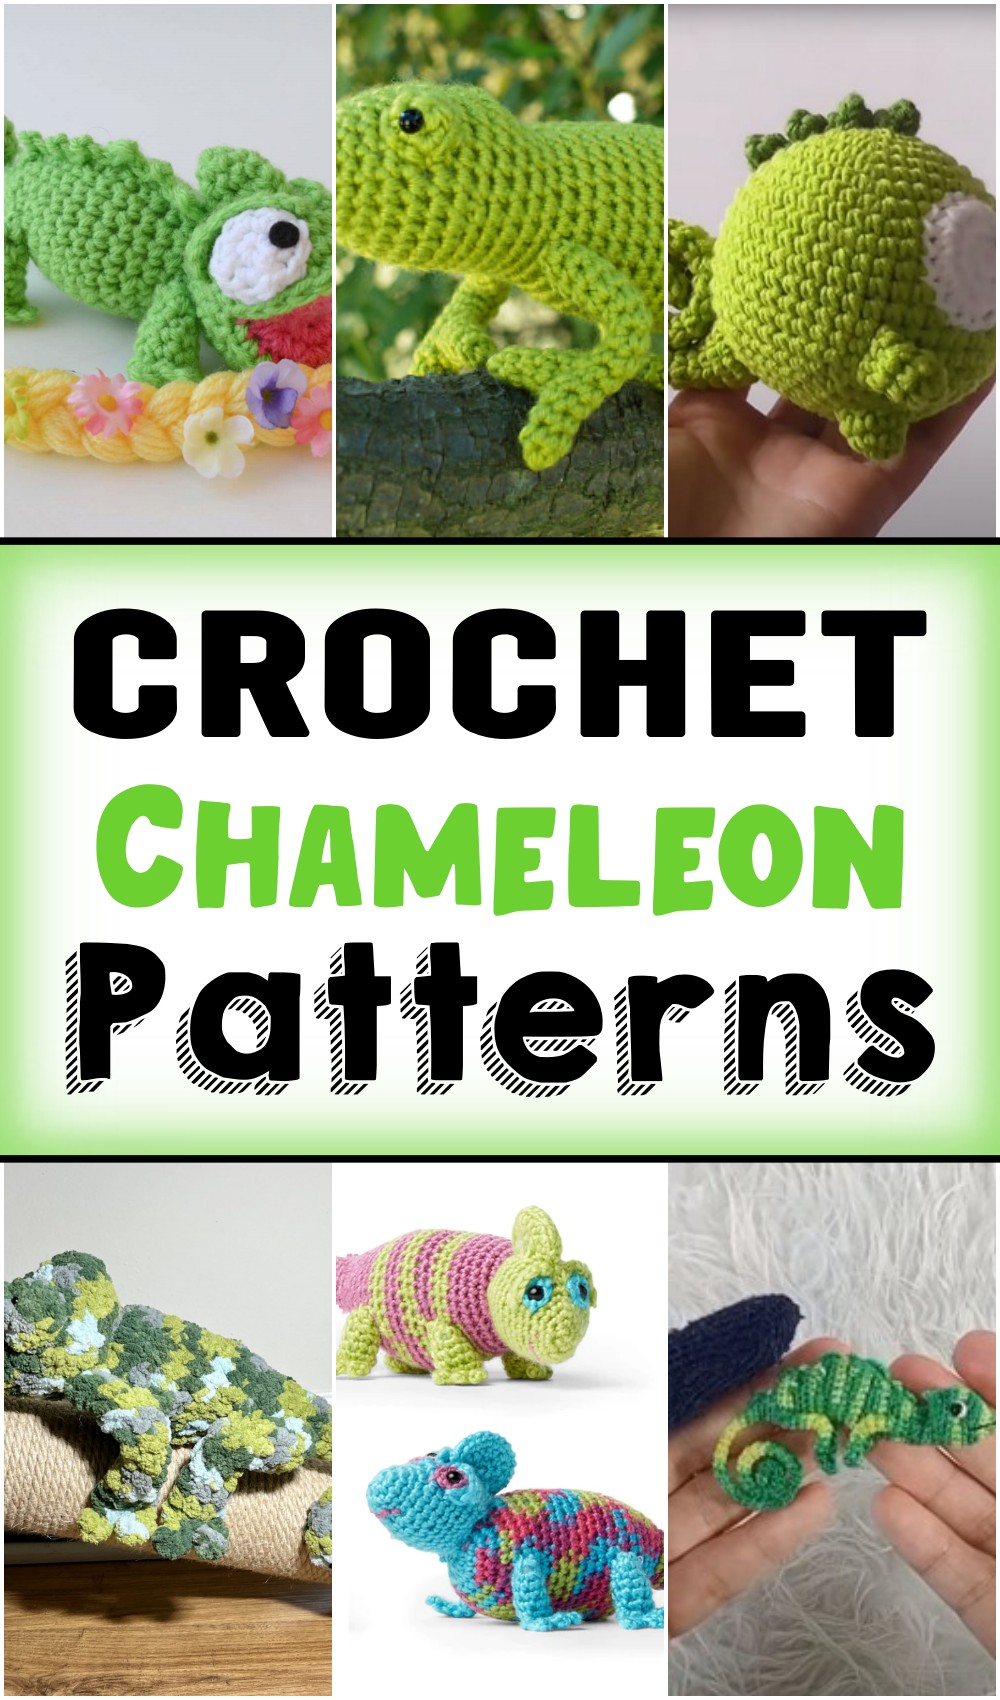 Free Crochet Chameleon Patterns